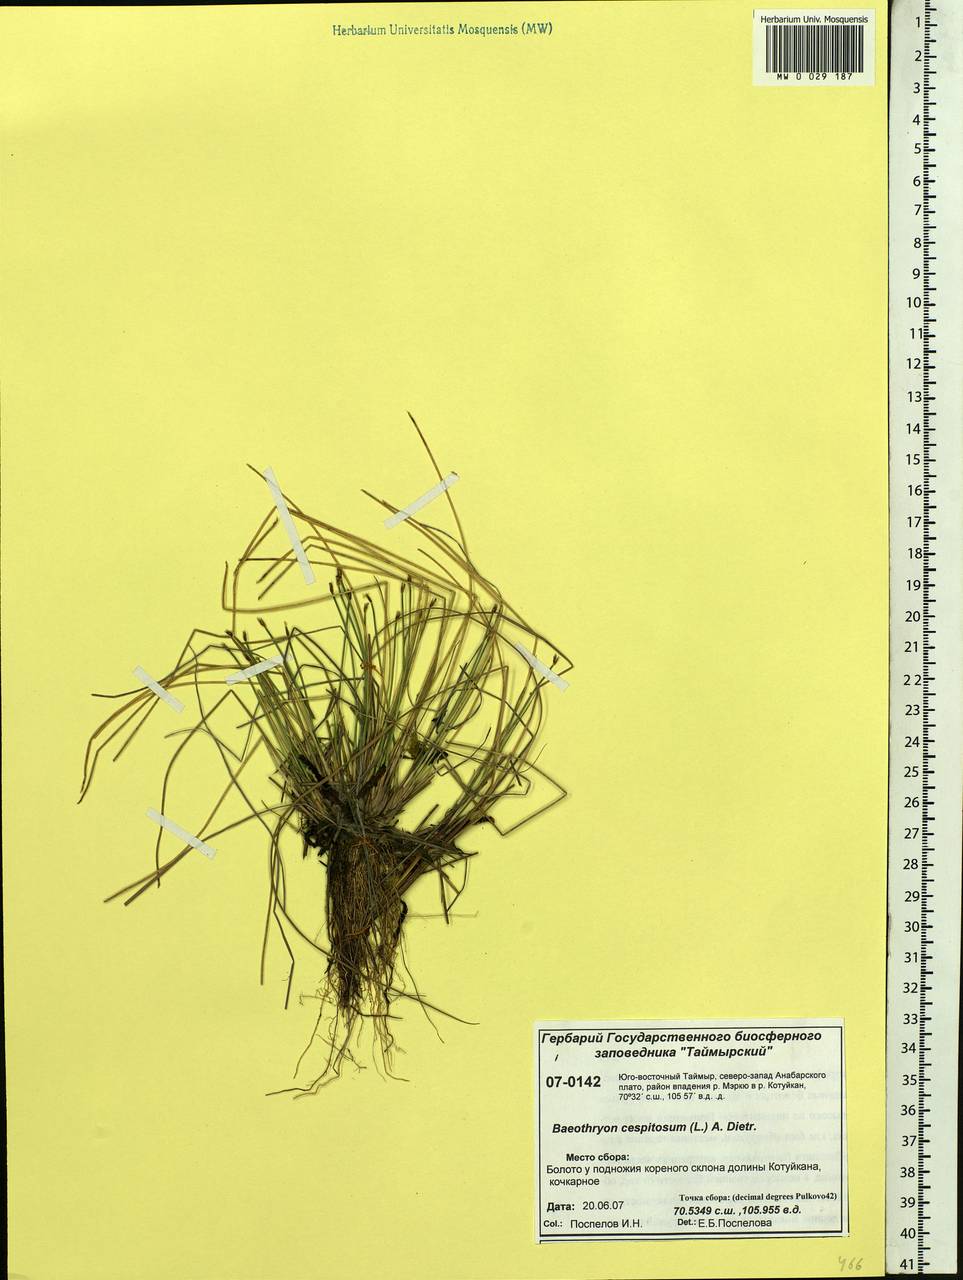 Trichophorum cespitosum (L.) Hartm., Siberia, Central Siberia (S3) (Russia)